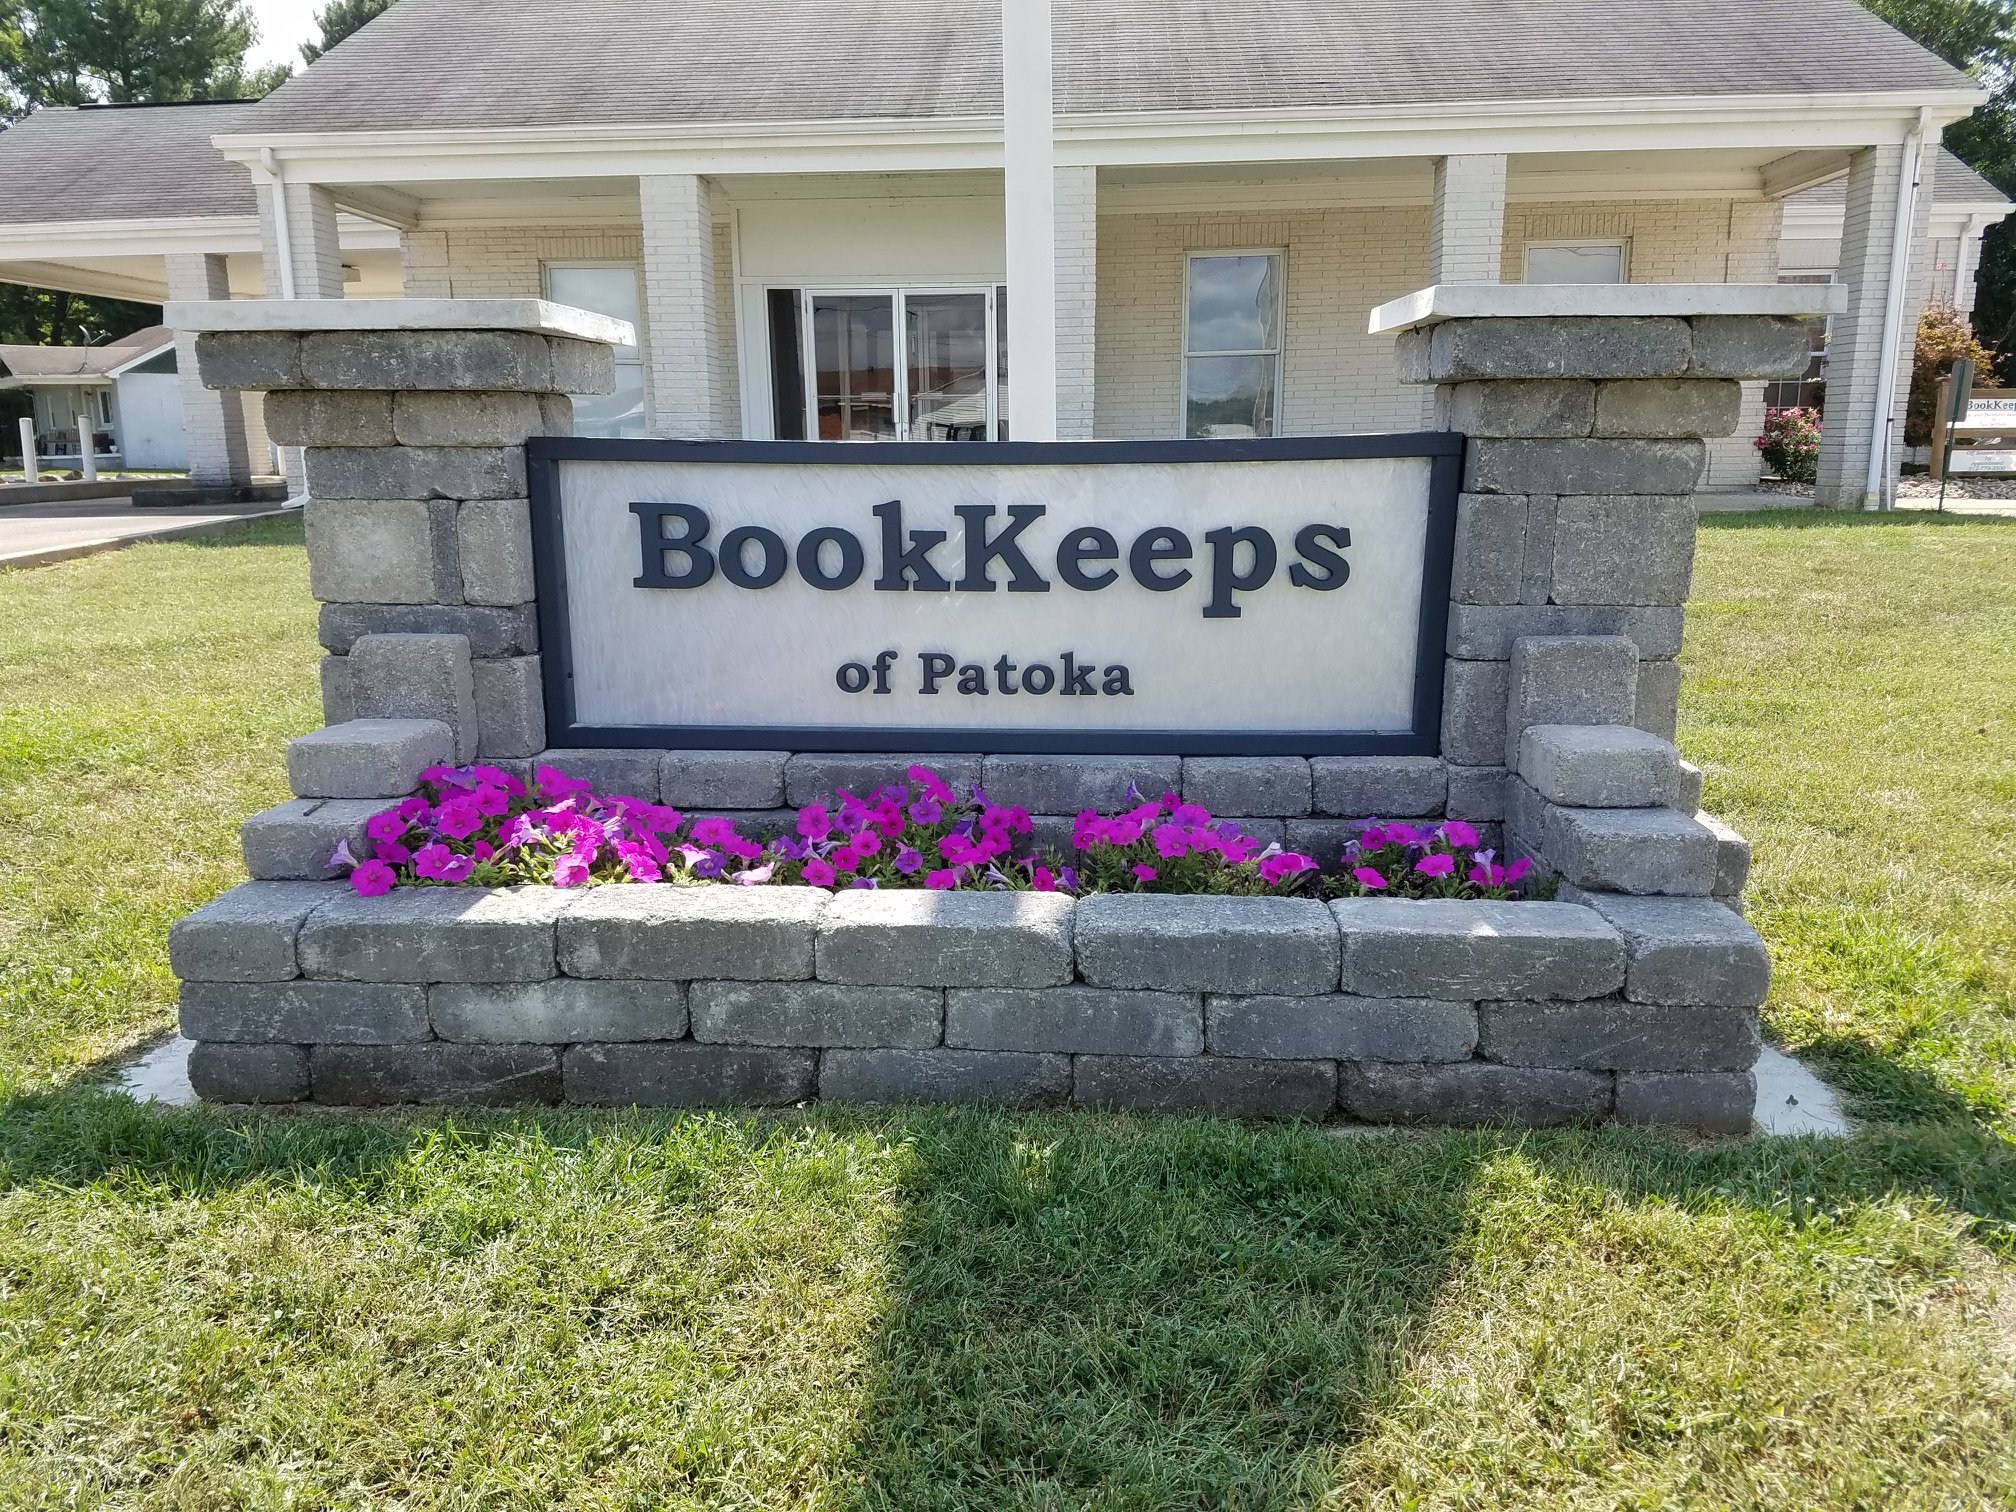 Bookkeeps of Patoka